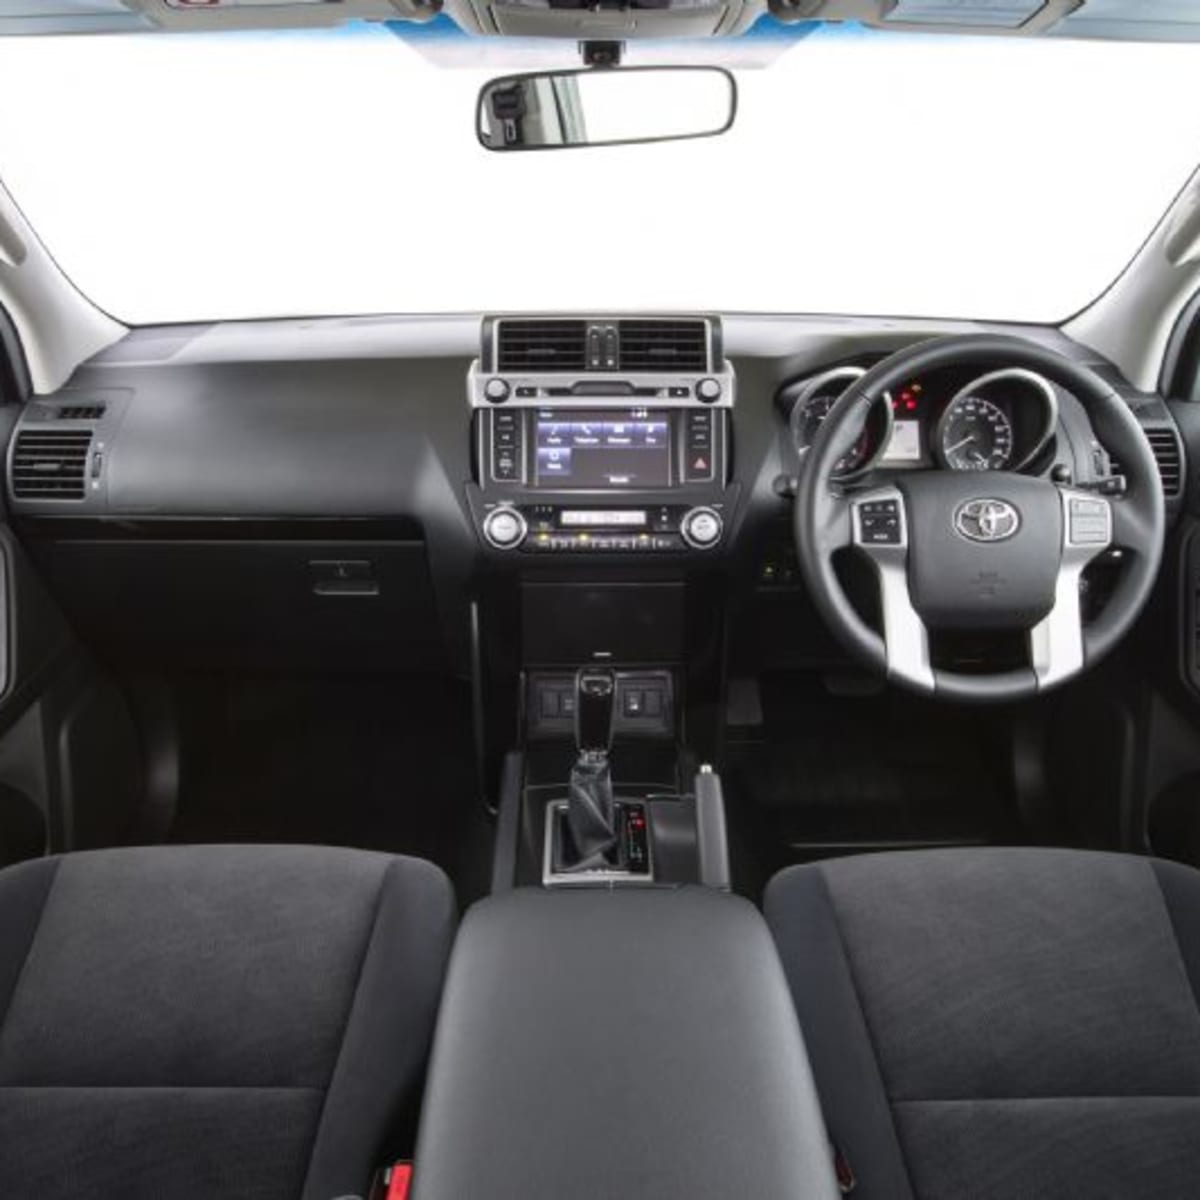 2011 Toyota Landcruiser Prado Gxl Review Caradvice